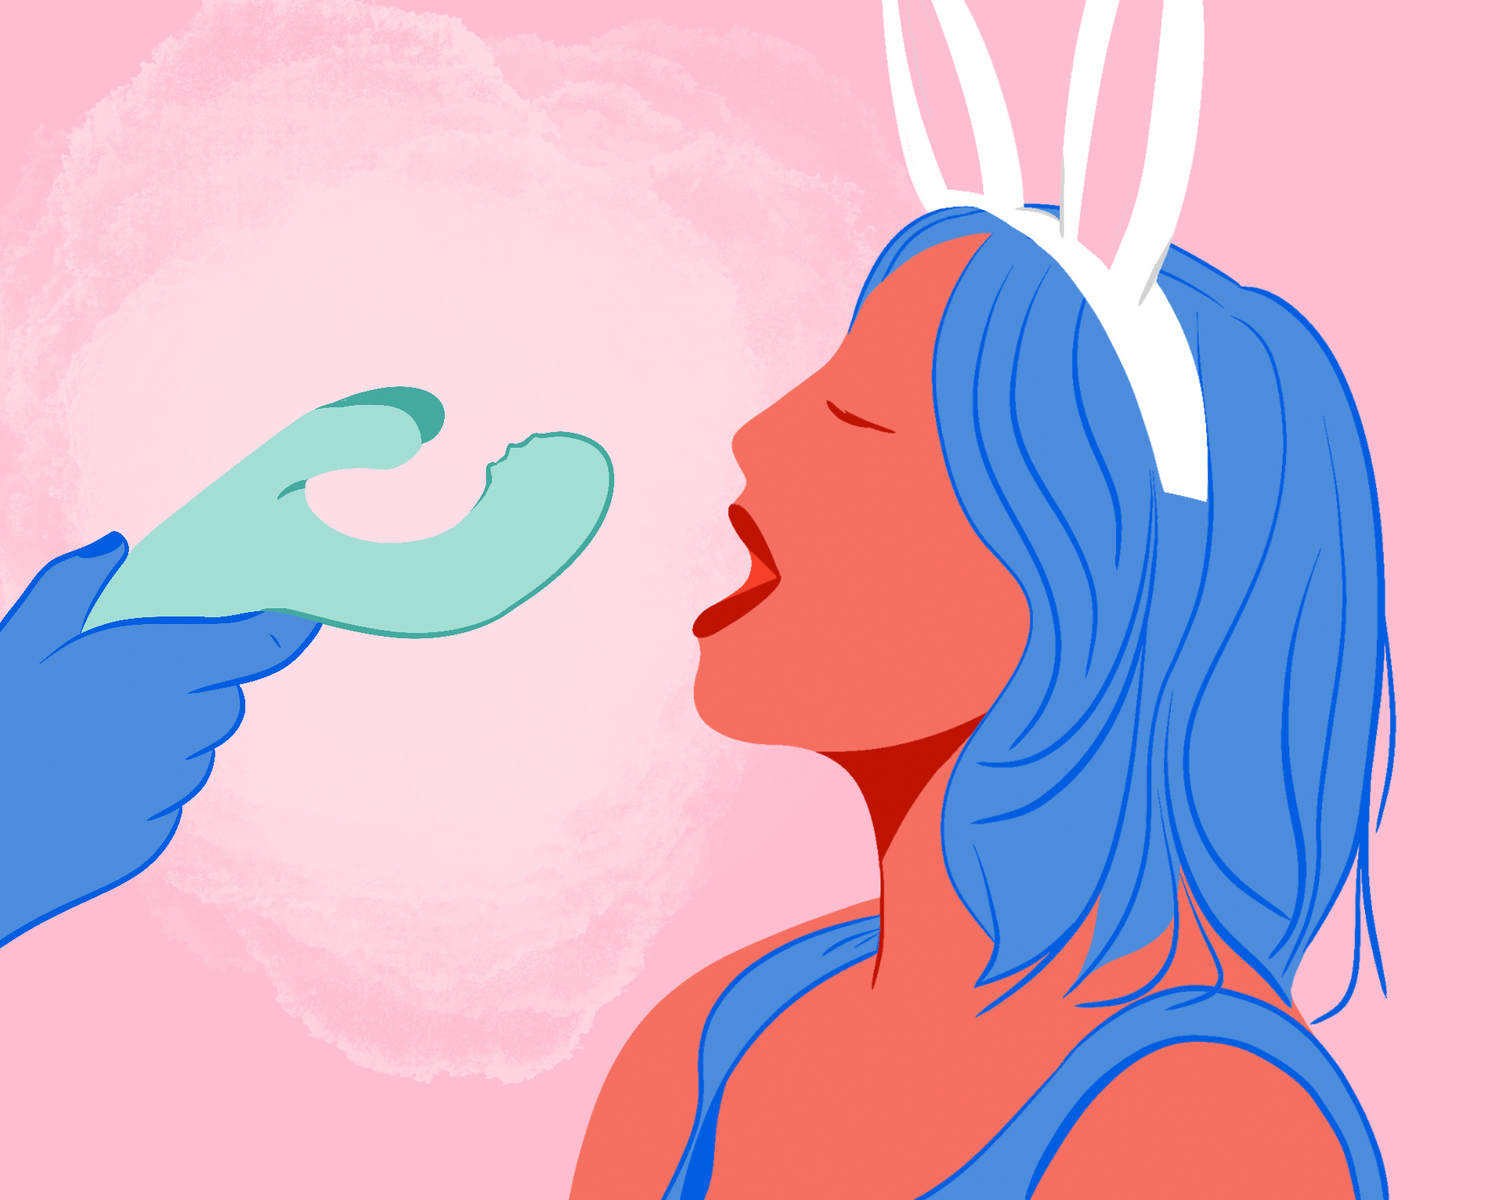 conto erótico rabbit de páscoa. Ilustração de uma mulher usando orelhinhas prestes a morder um vibrador rabbit.